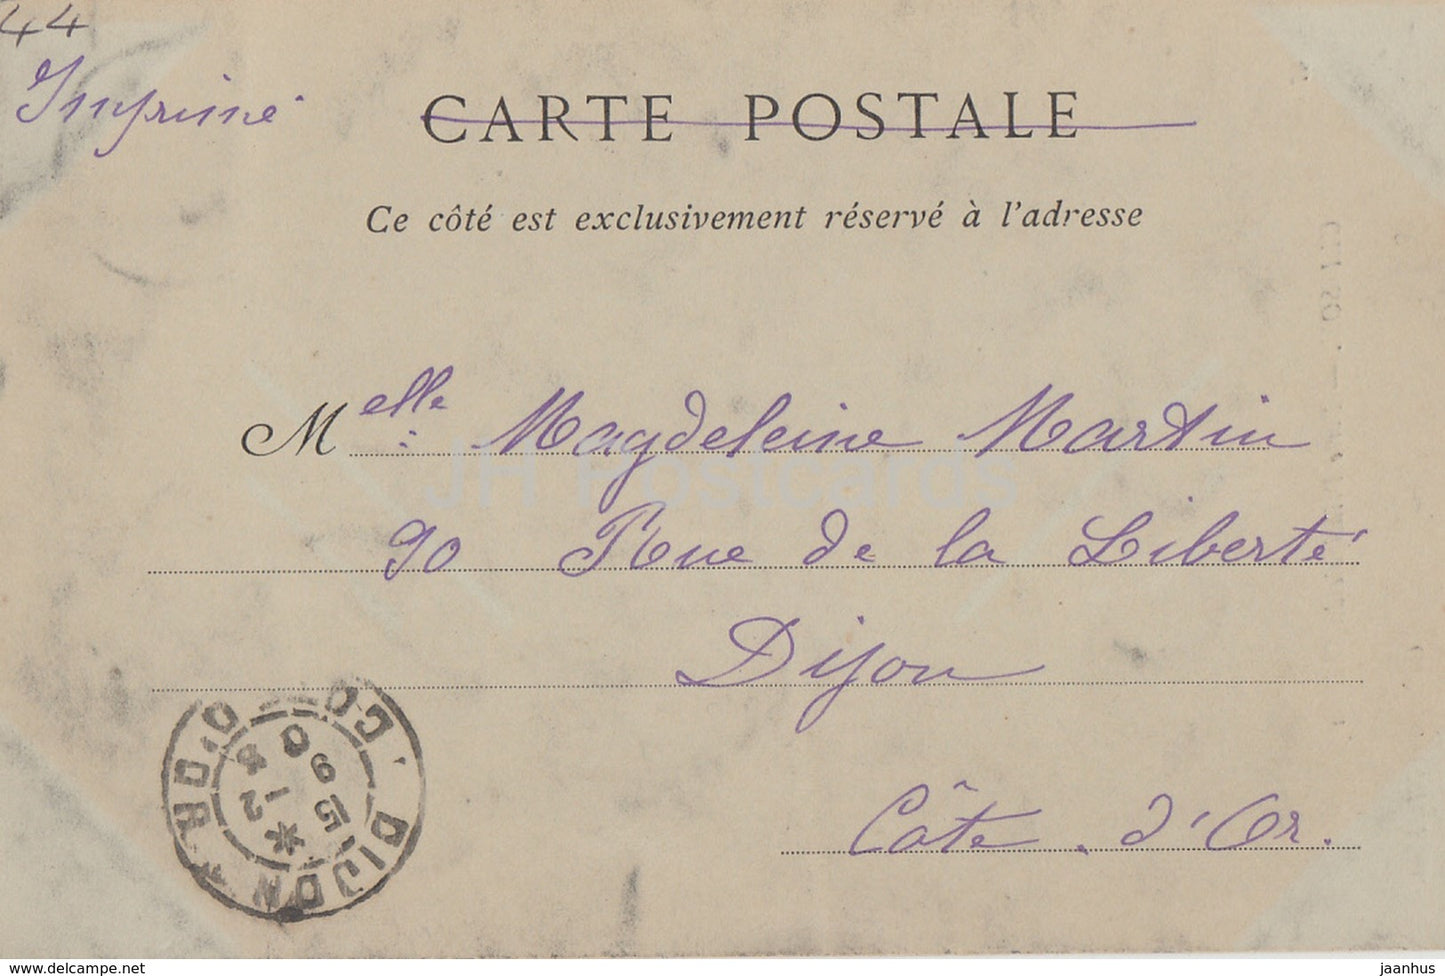 Clisson - Porte Principale du Château - château - 47 - carte postale ancienne - 1903 - France - occasion